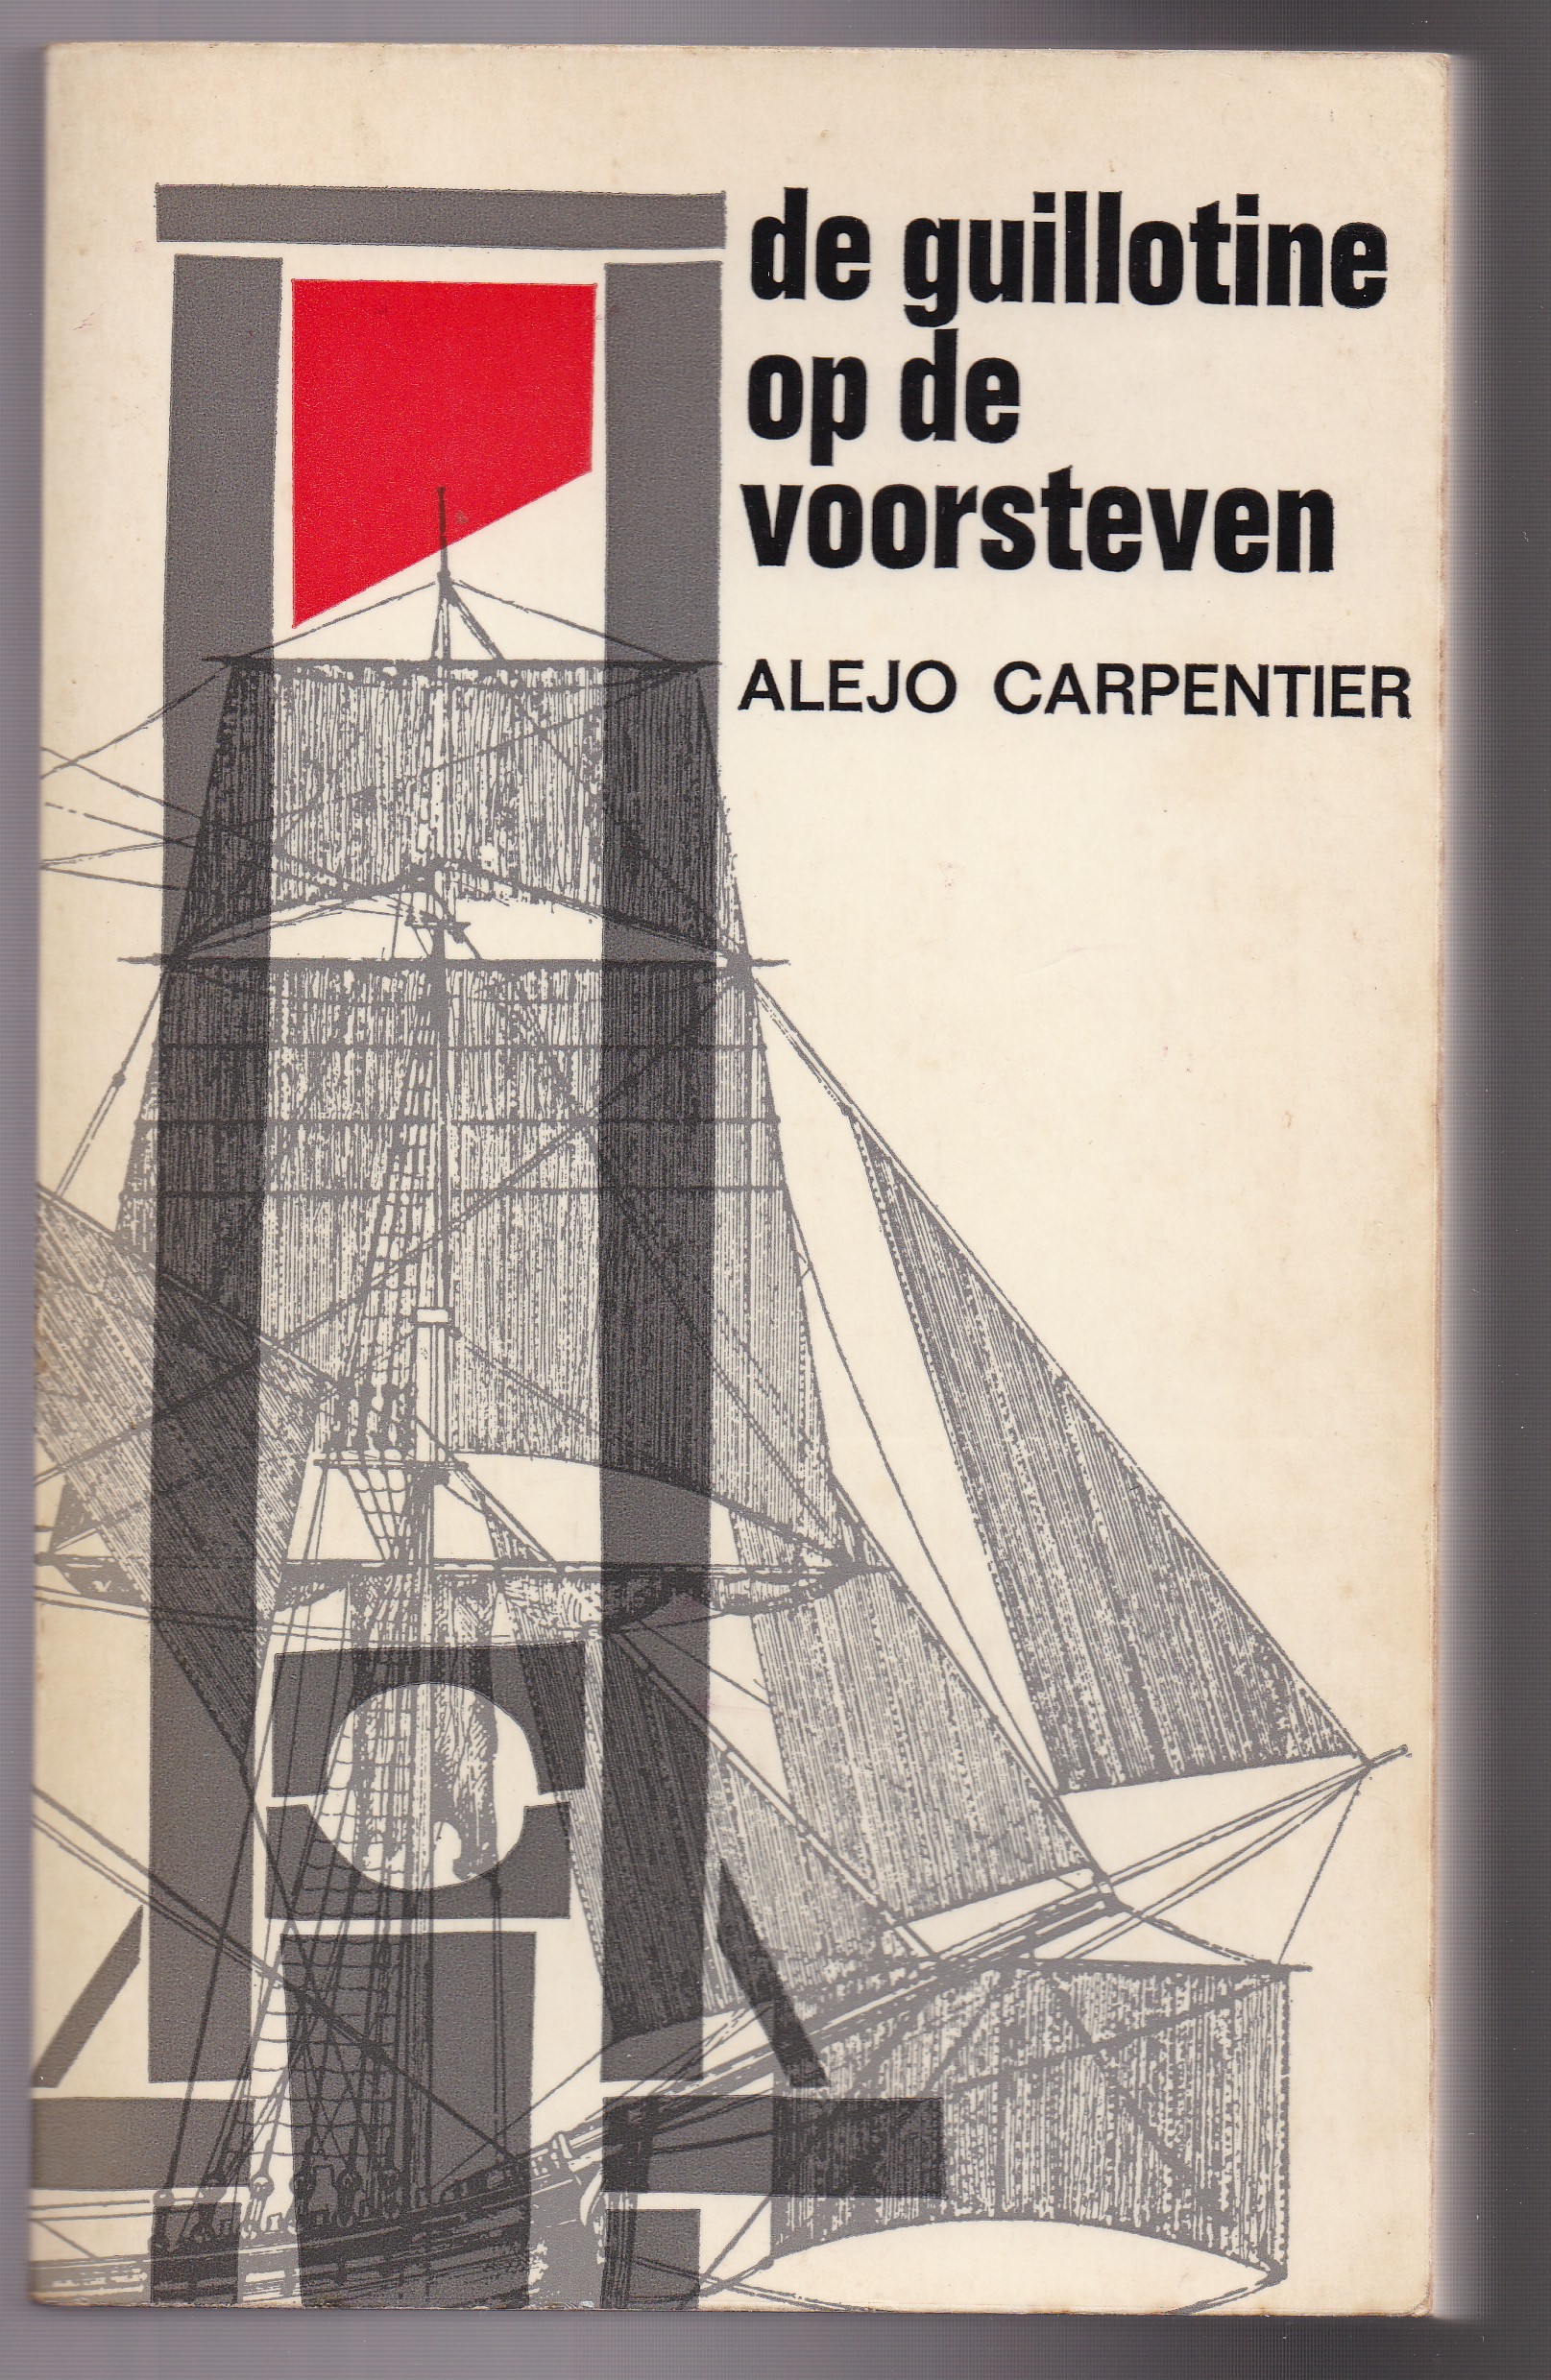 Carpentier, Alejo - De guillotine op de voorsteven. Roman. Uit het Spaans vertaald door Dhr. J.G. Rijkmans